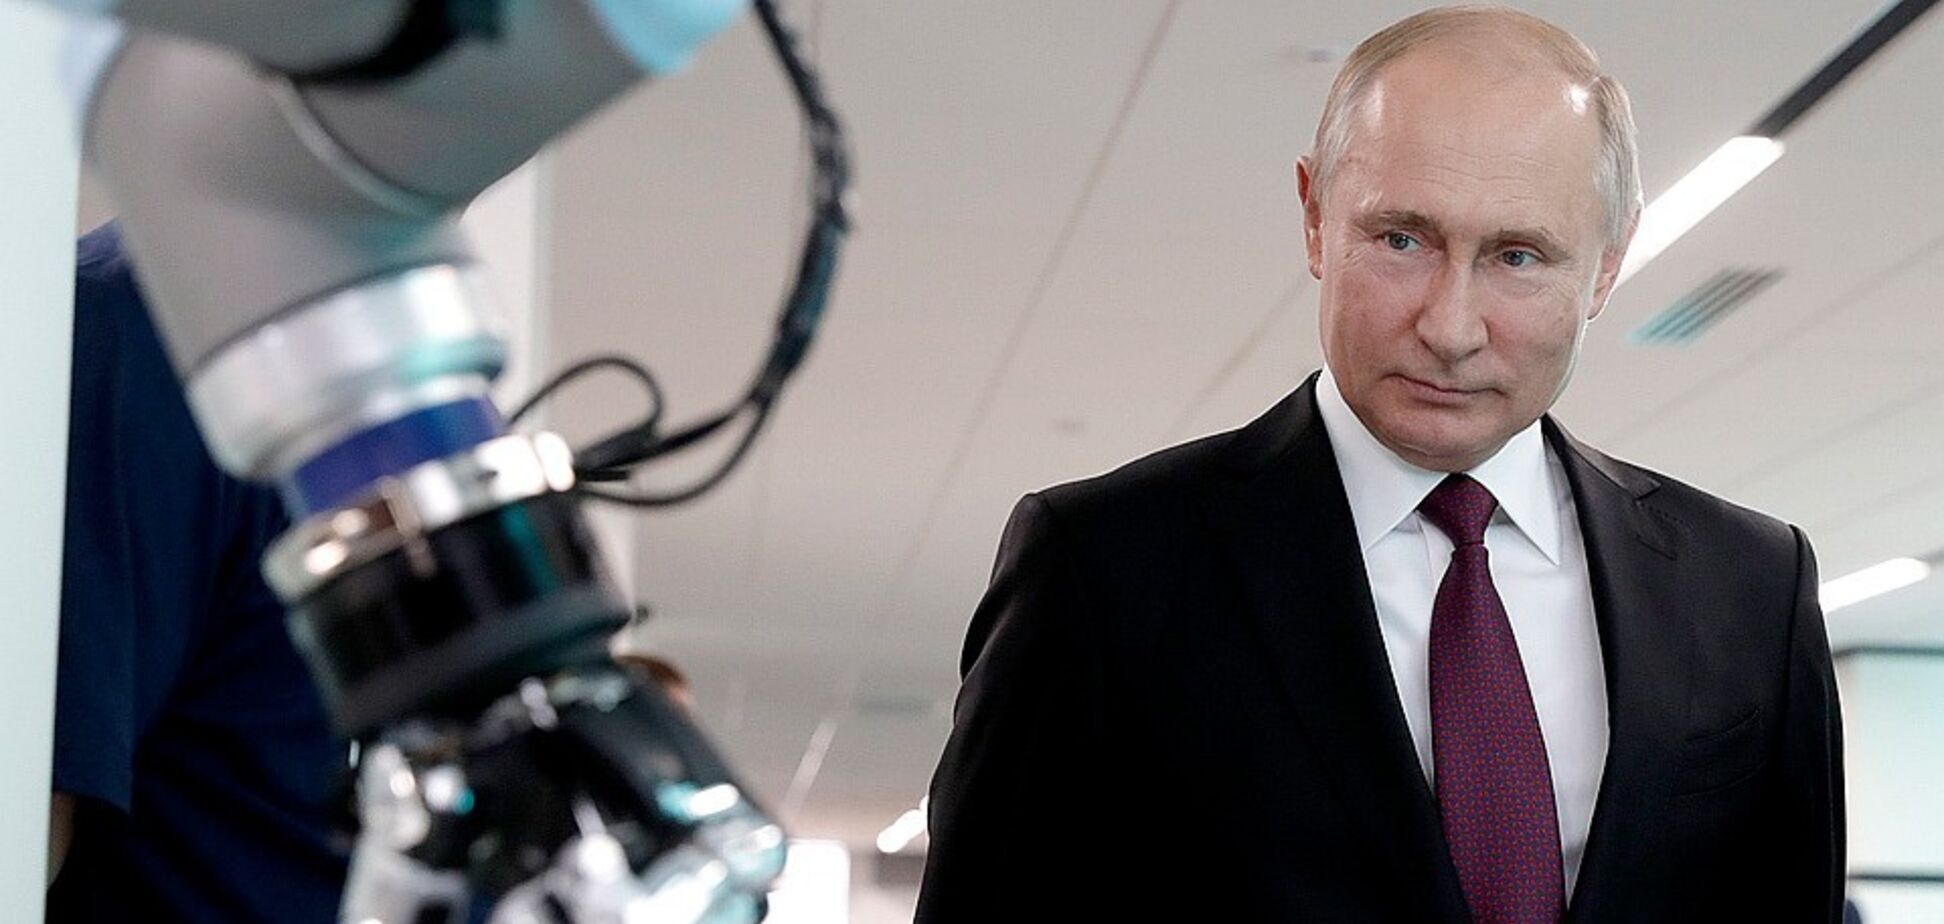 'В калошах топают в сортир': Путина высмеяли за амбиции о мировом лидерстве